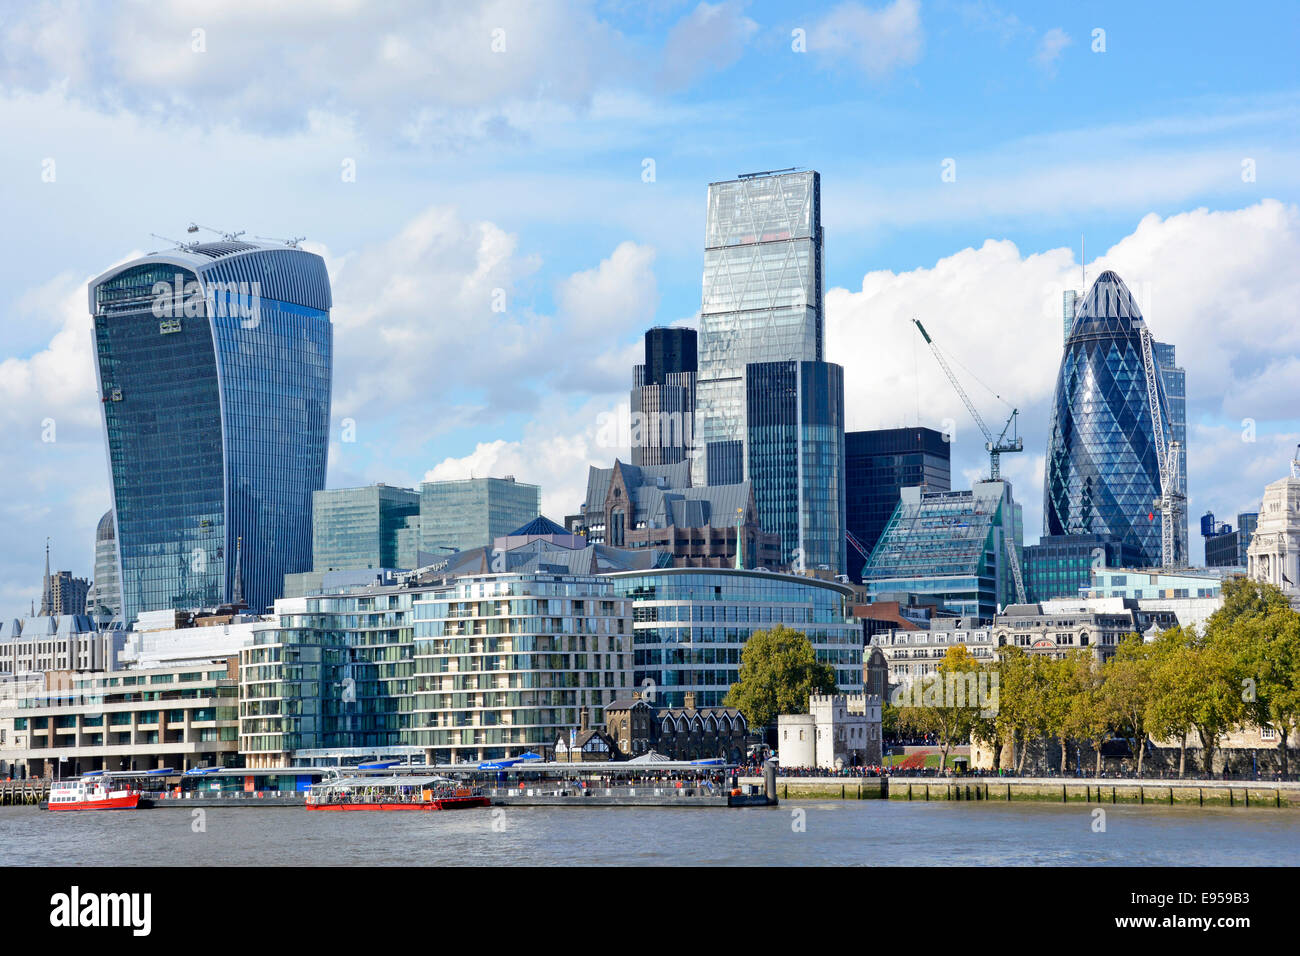 Gherkin Cheesegrater e Walkie Talkie edifici storici per uffici grattacieli dominano il paesaggio urbano della City of London skyline Inghilterra Regno Unito Foto Stock